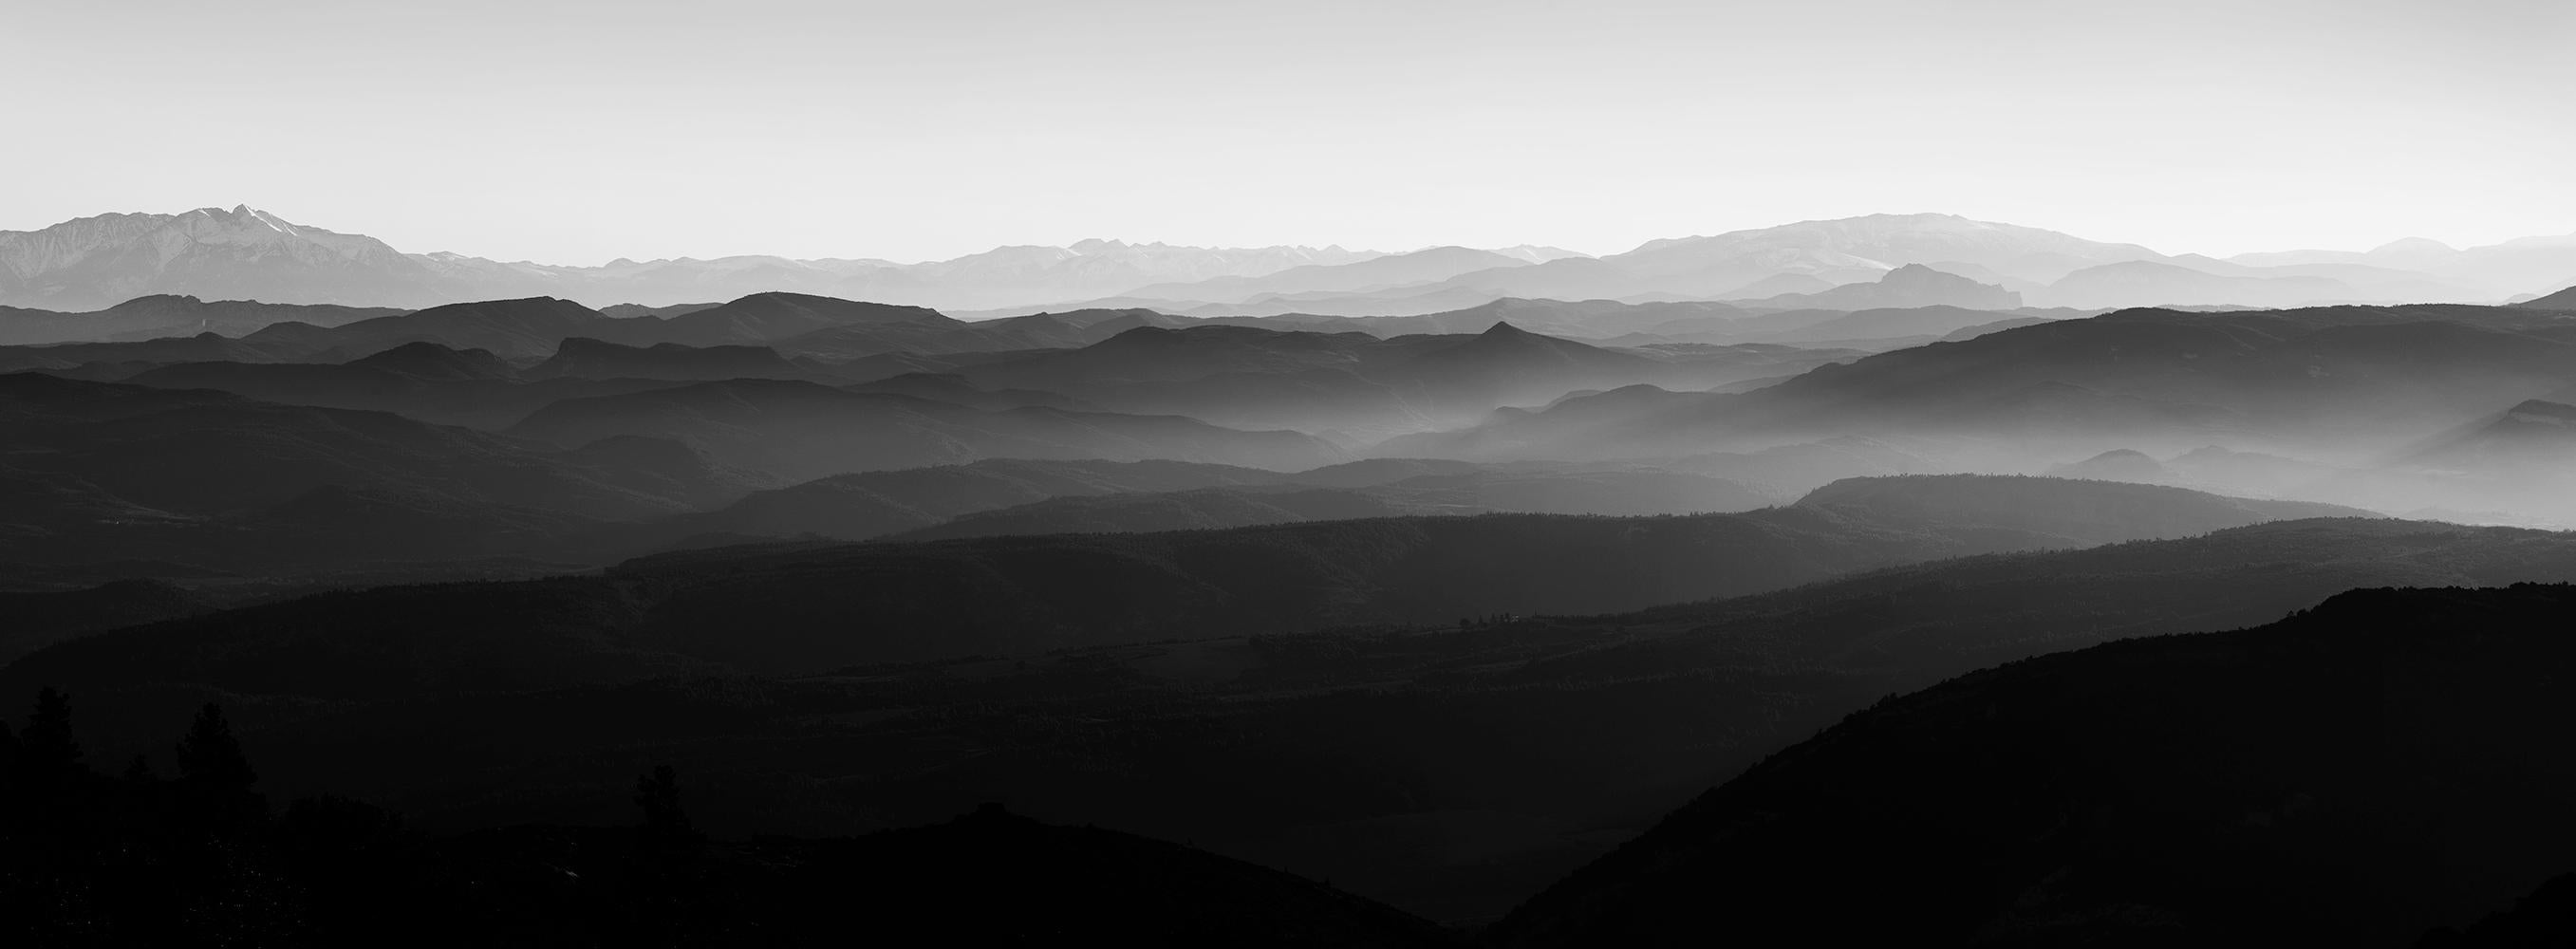 Les Pyrénées - Livraison gratuite - Photo noir et blanc, Tirage en édition limitée, Paysage